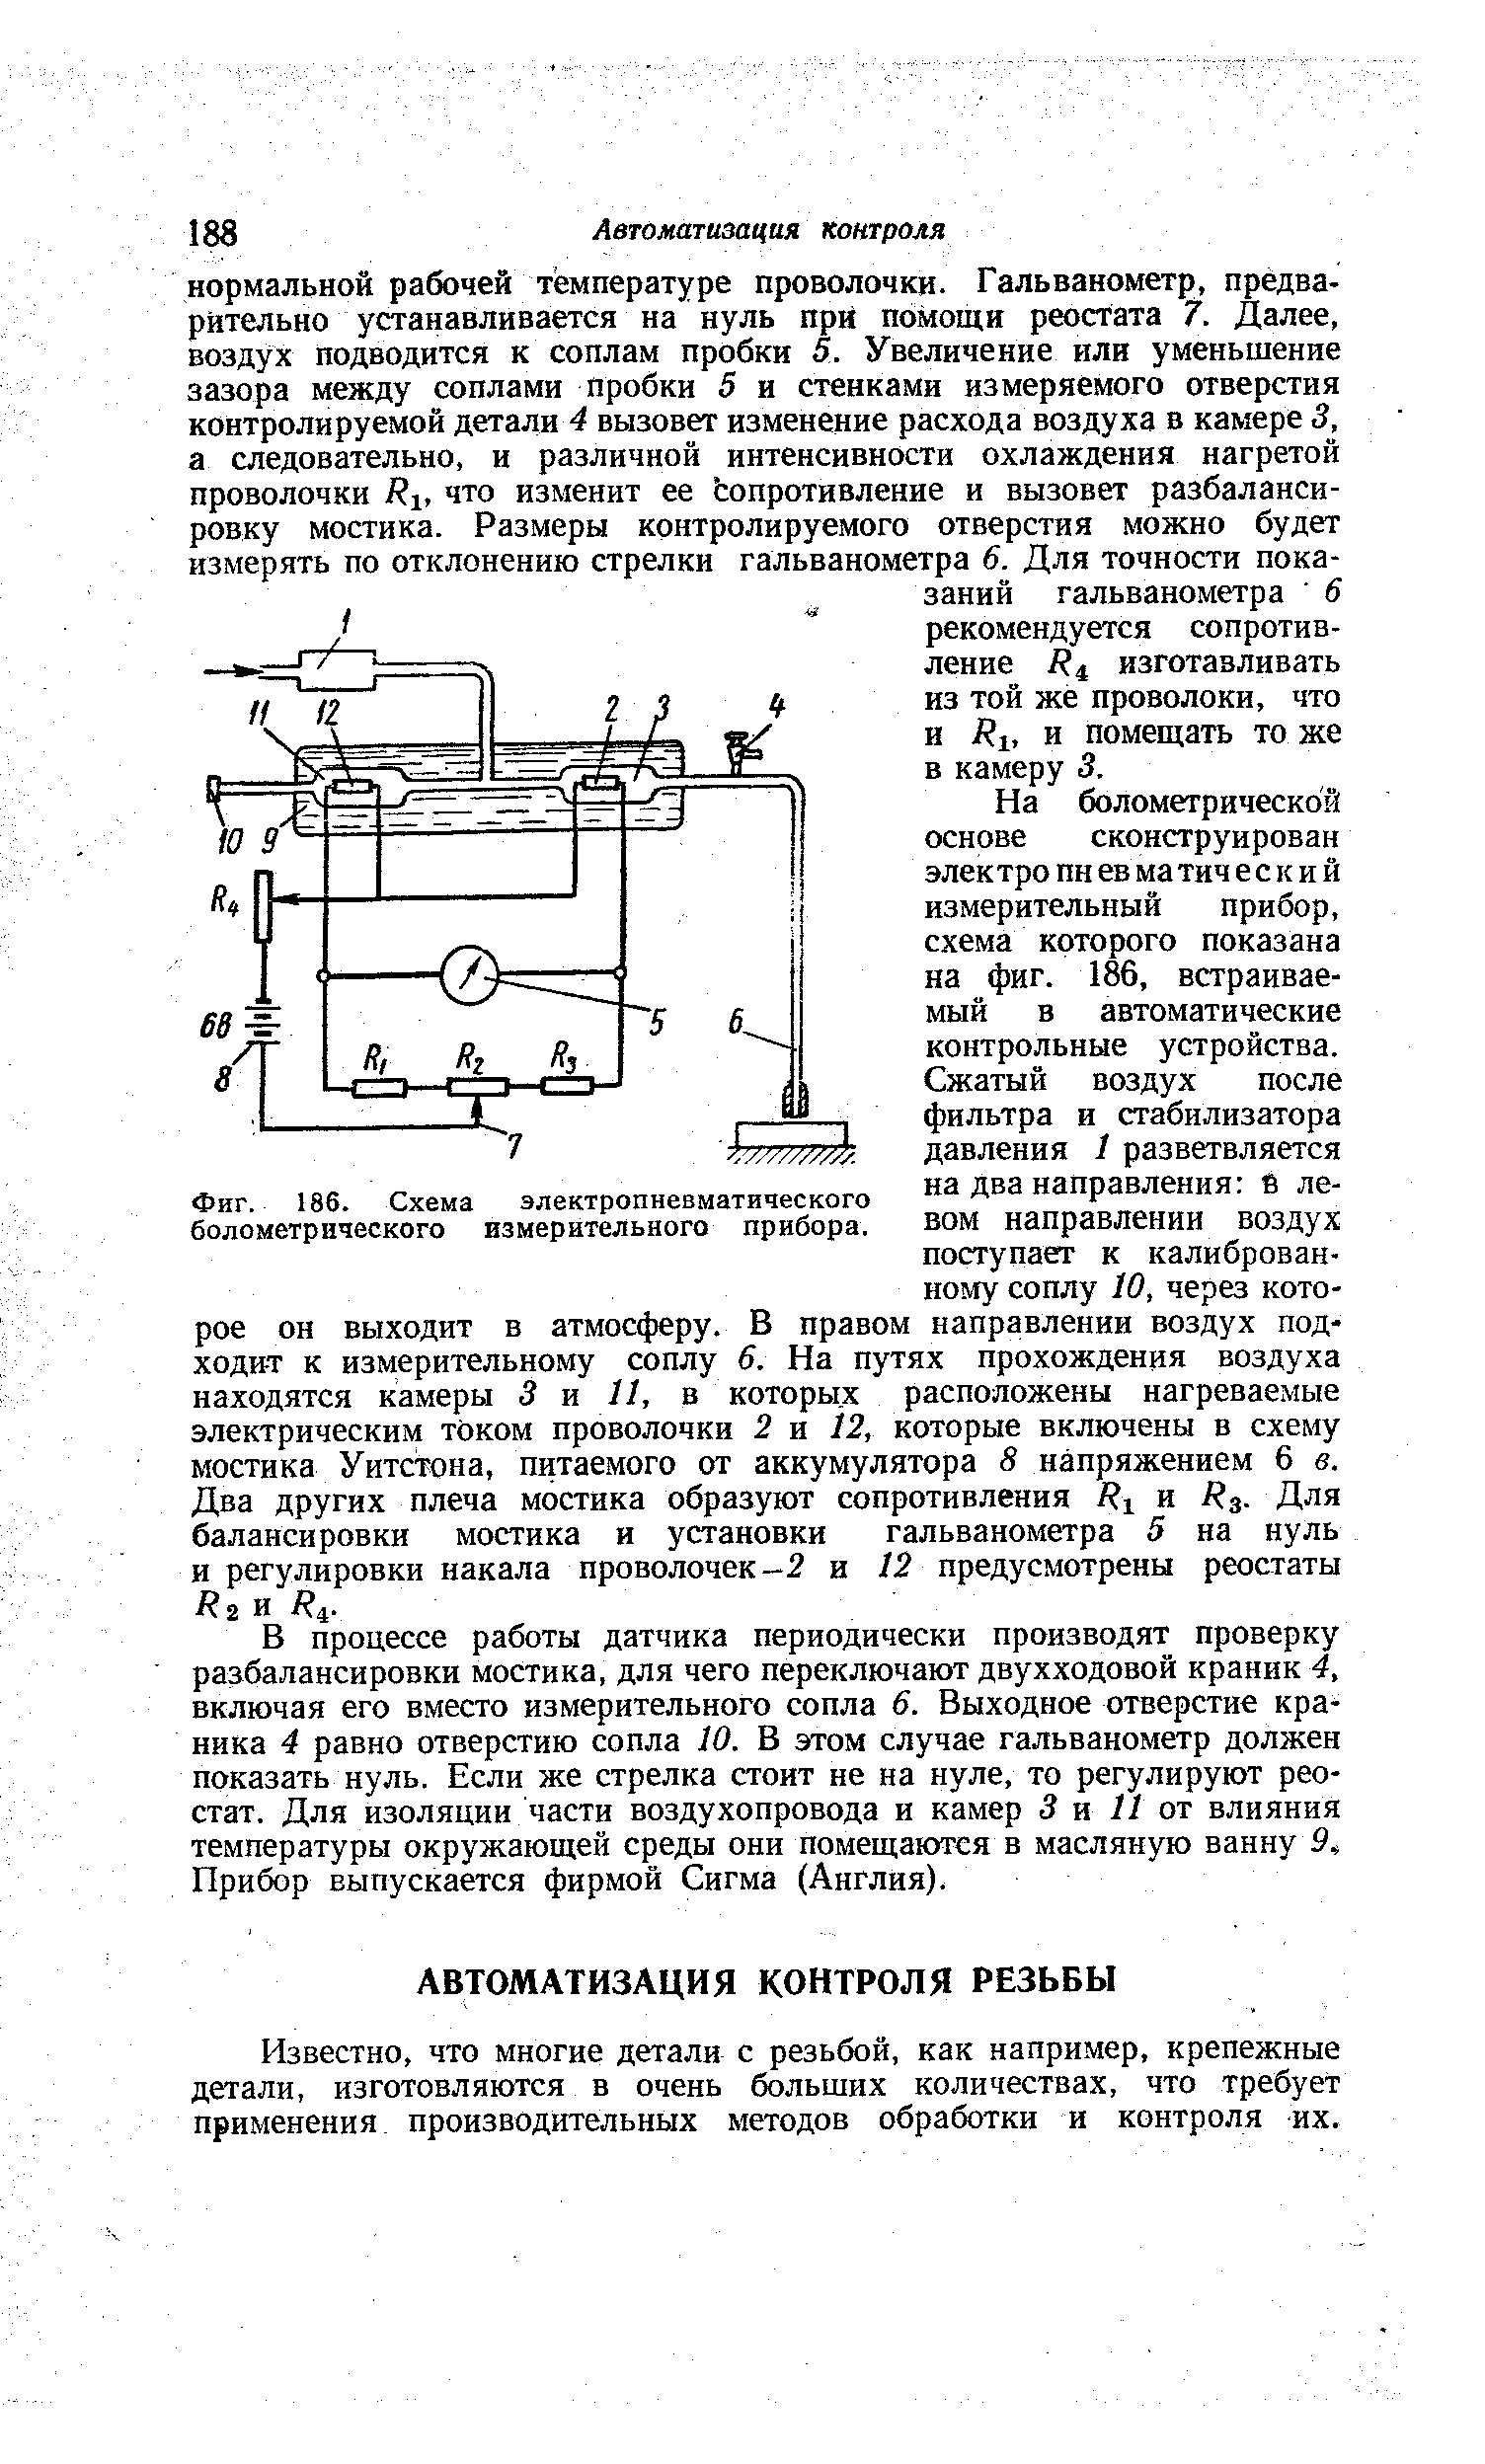 Фиг. 186. Схема электропневматического болометрического измерительного прибора.
